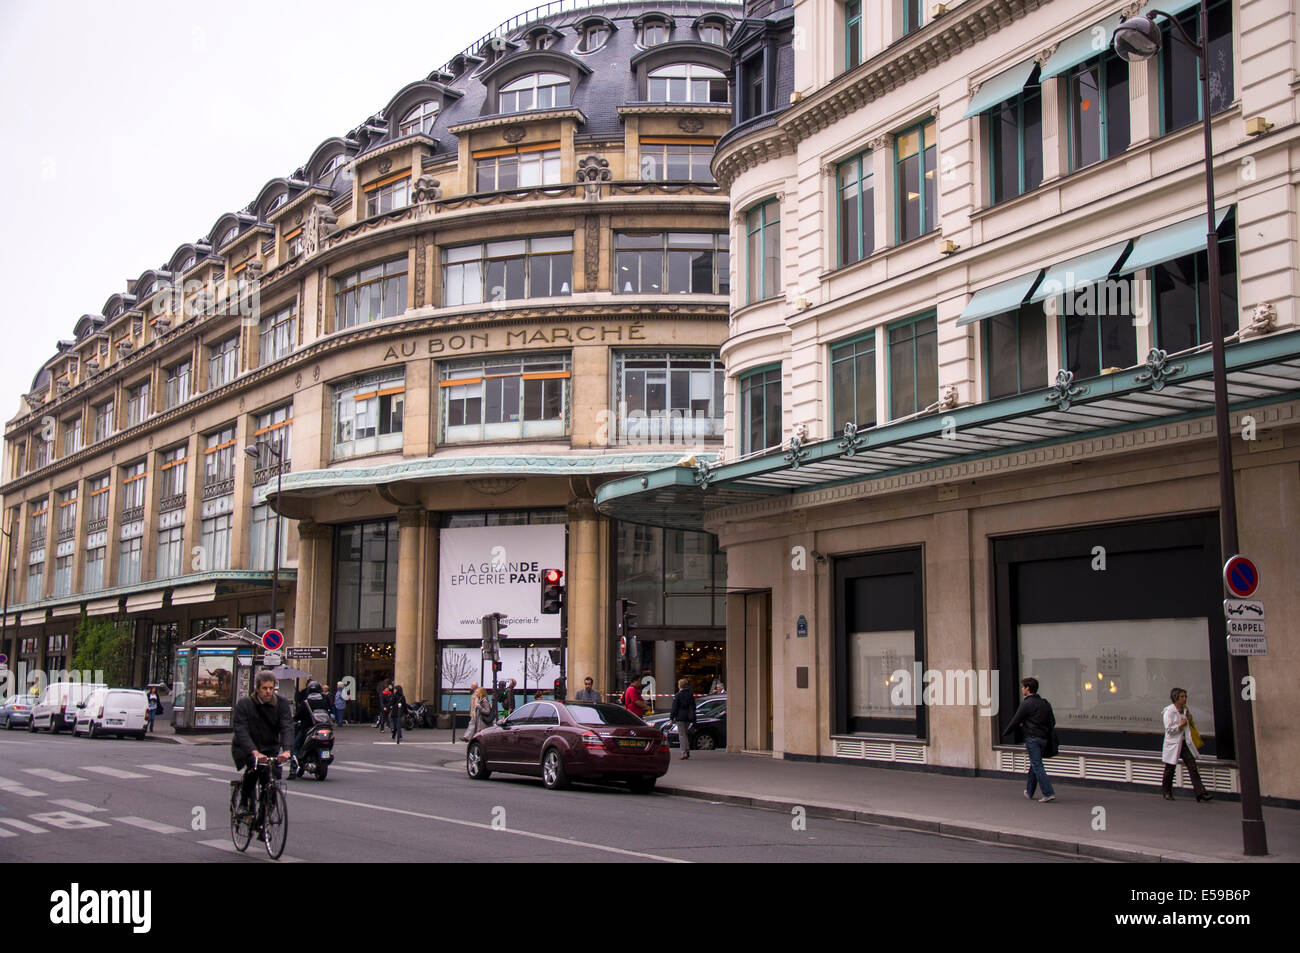 Au Bon Marche department store in Paris France Stock Photo